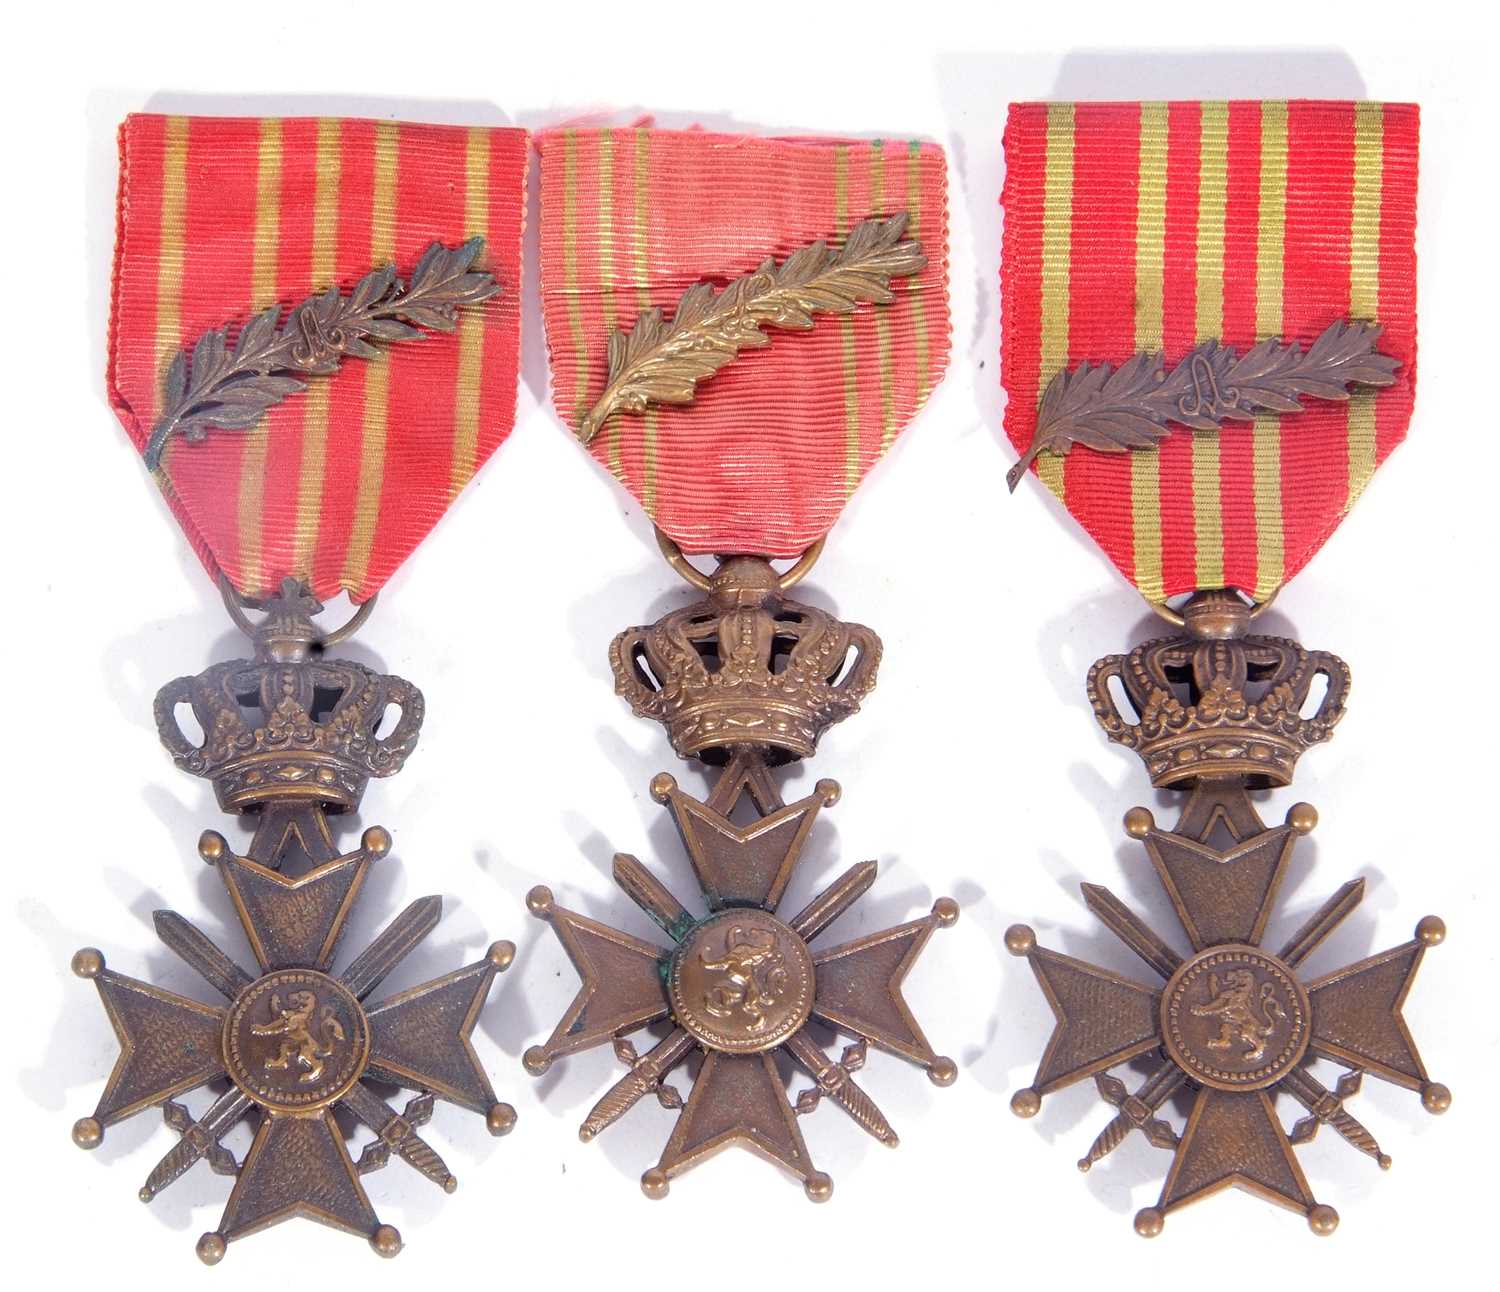 2 x WWI Belgian Croix de Guerre with palm leaf, together with WWI Croix de Guerre with palm leaf (